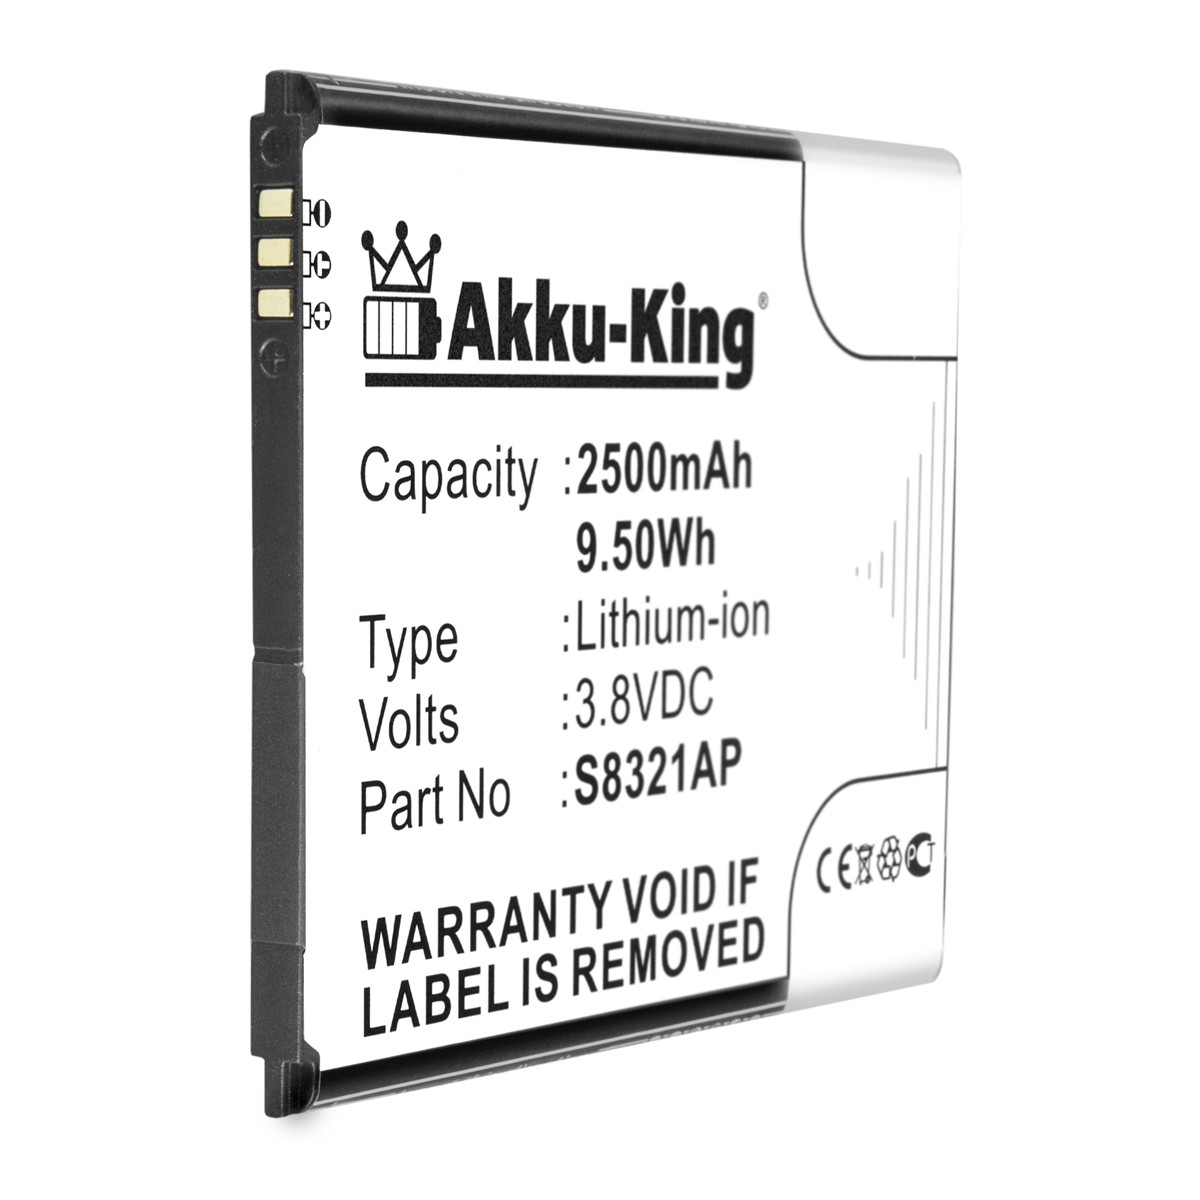 S8321AP Handy-Akku, mit Volt, kompatibel 3.8 AKKU-KING 2500mAh Wiko Akku Li-Ion